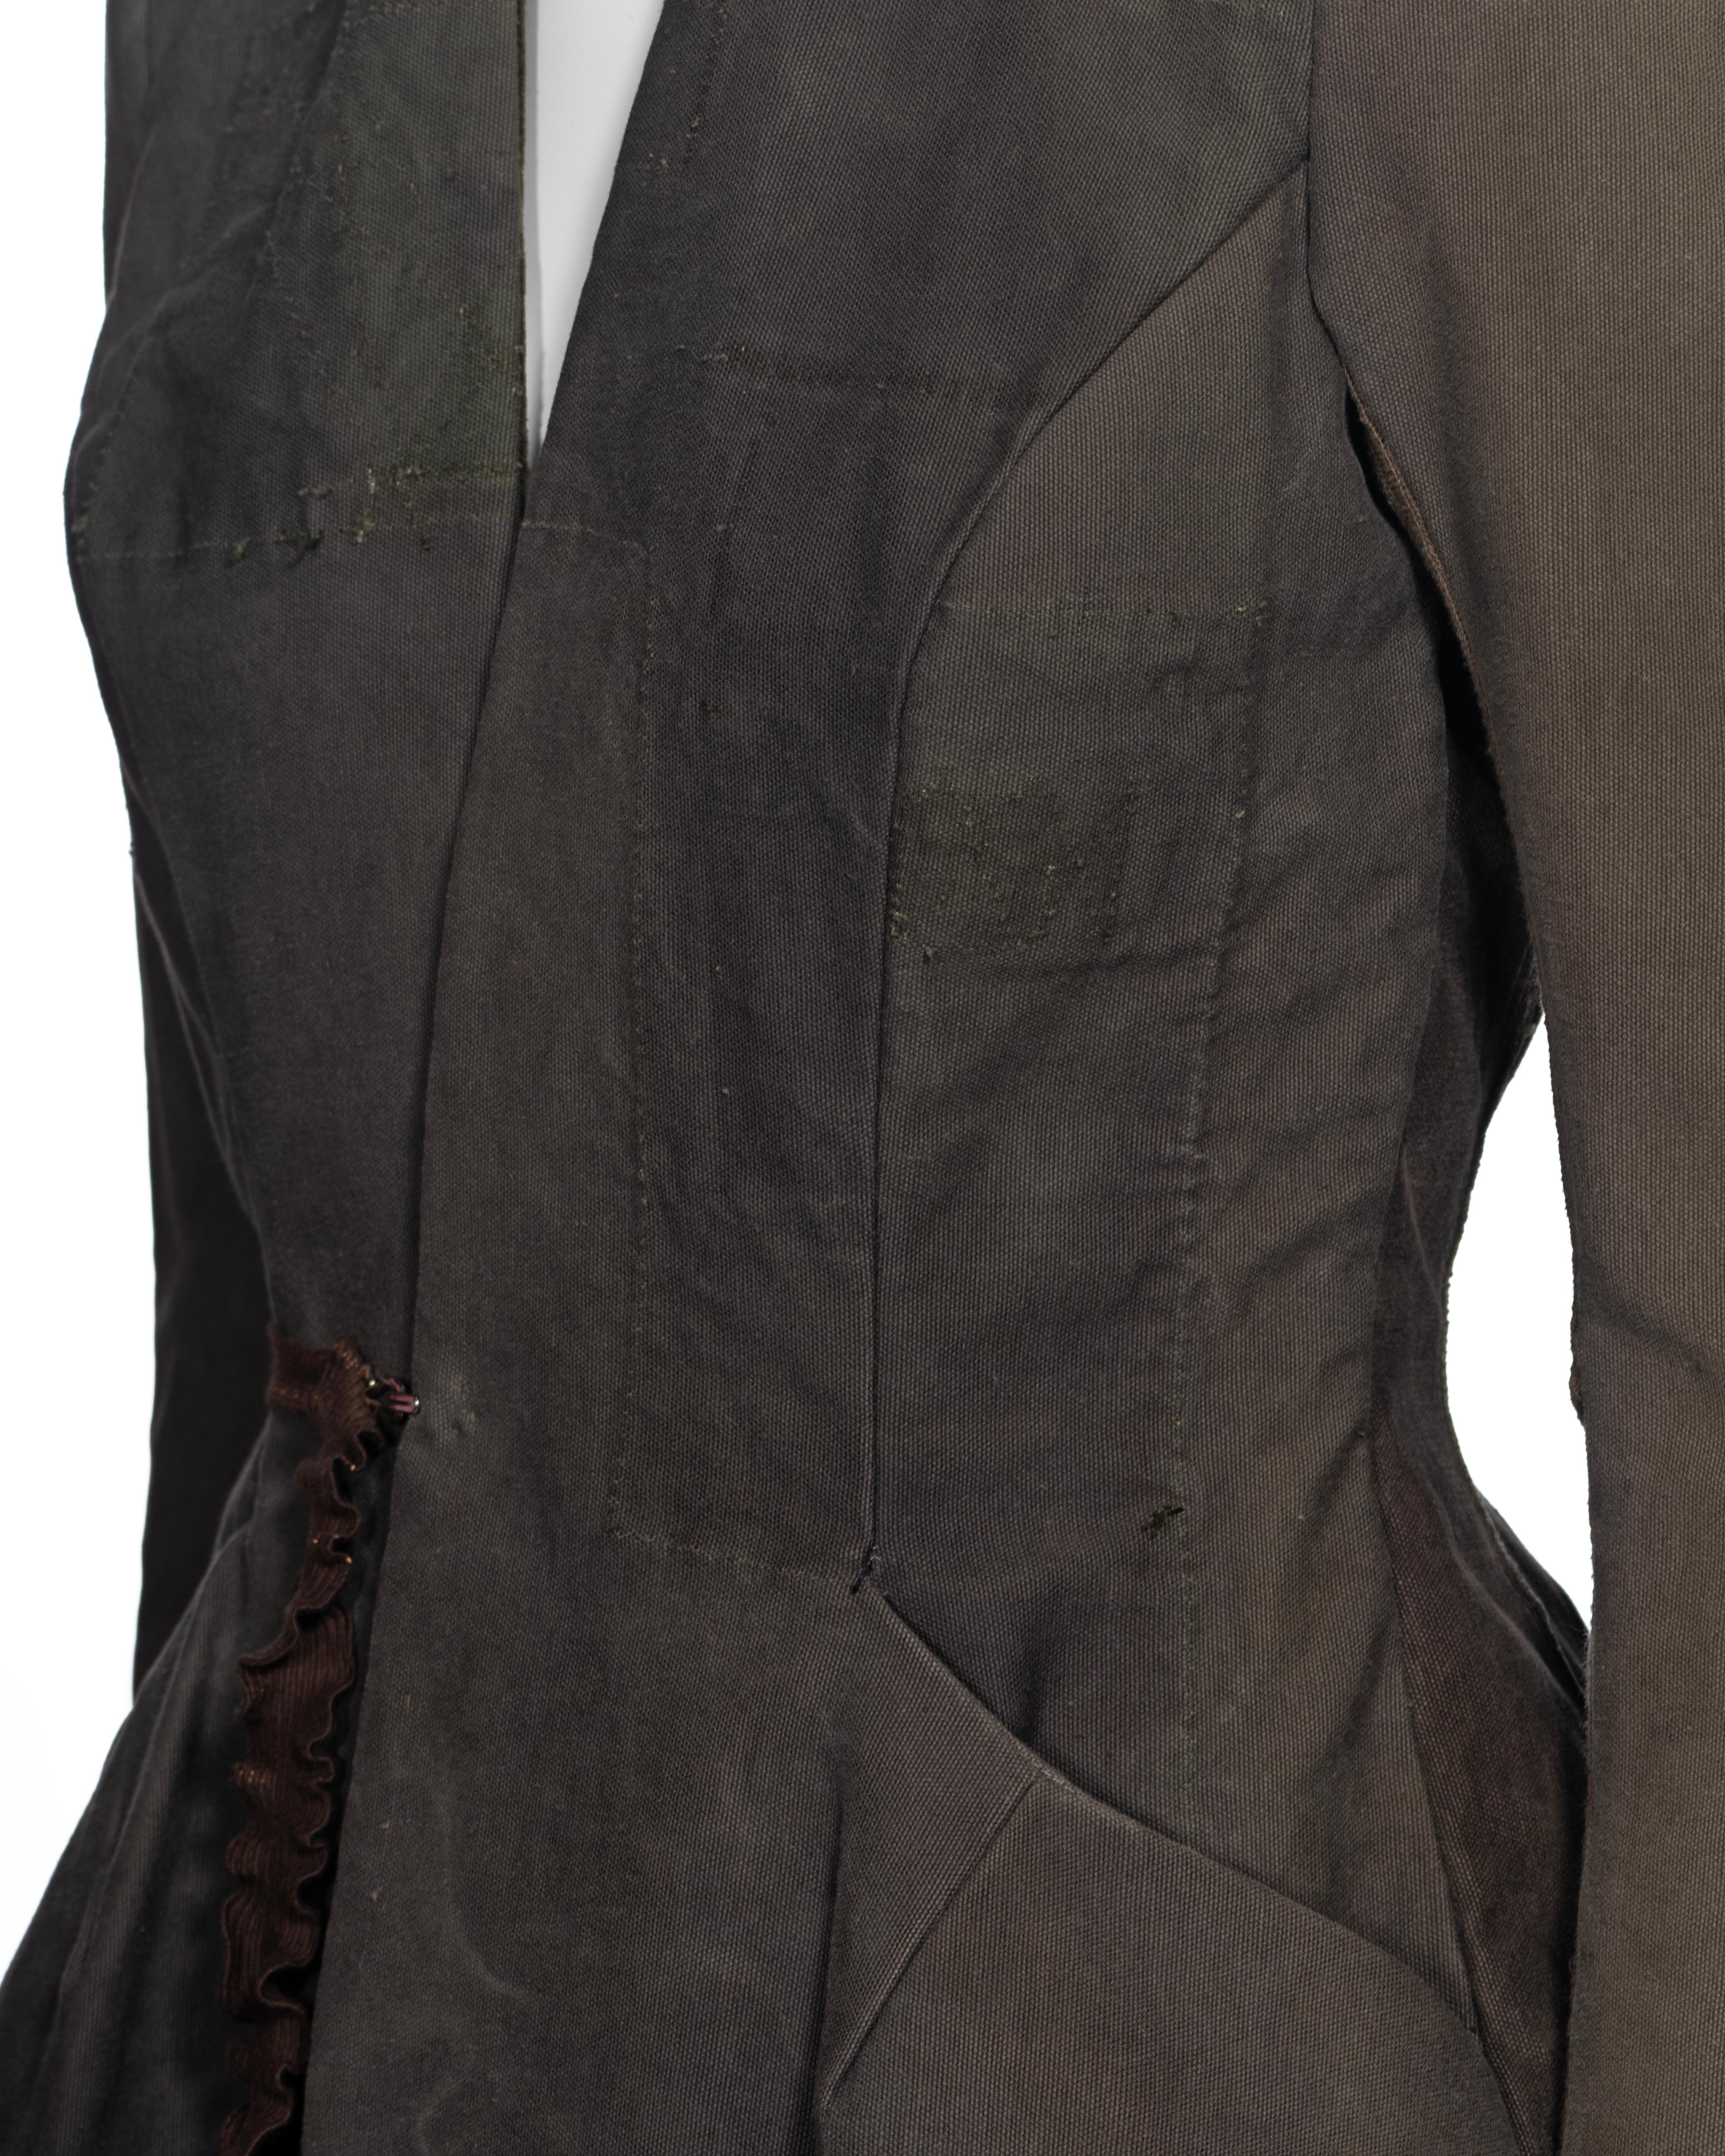 Veste de Rick Owens fabriquée à partir de sacs militaires déclassés, vers 1998 13